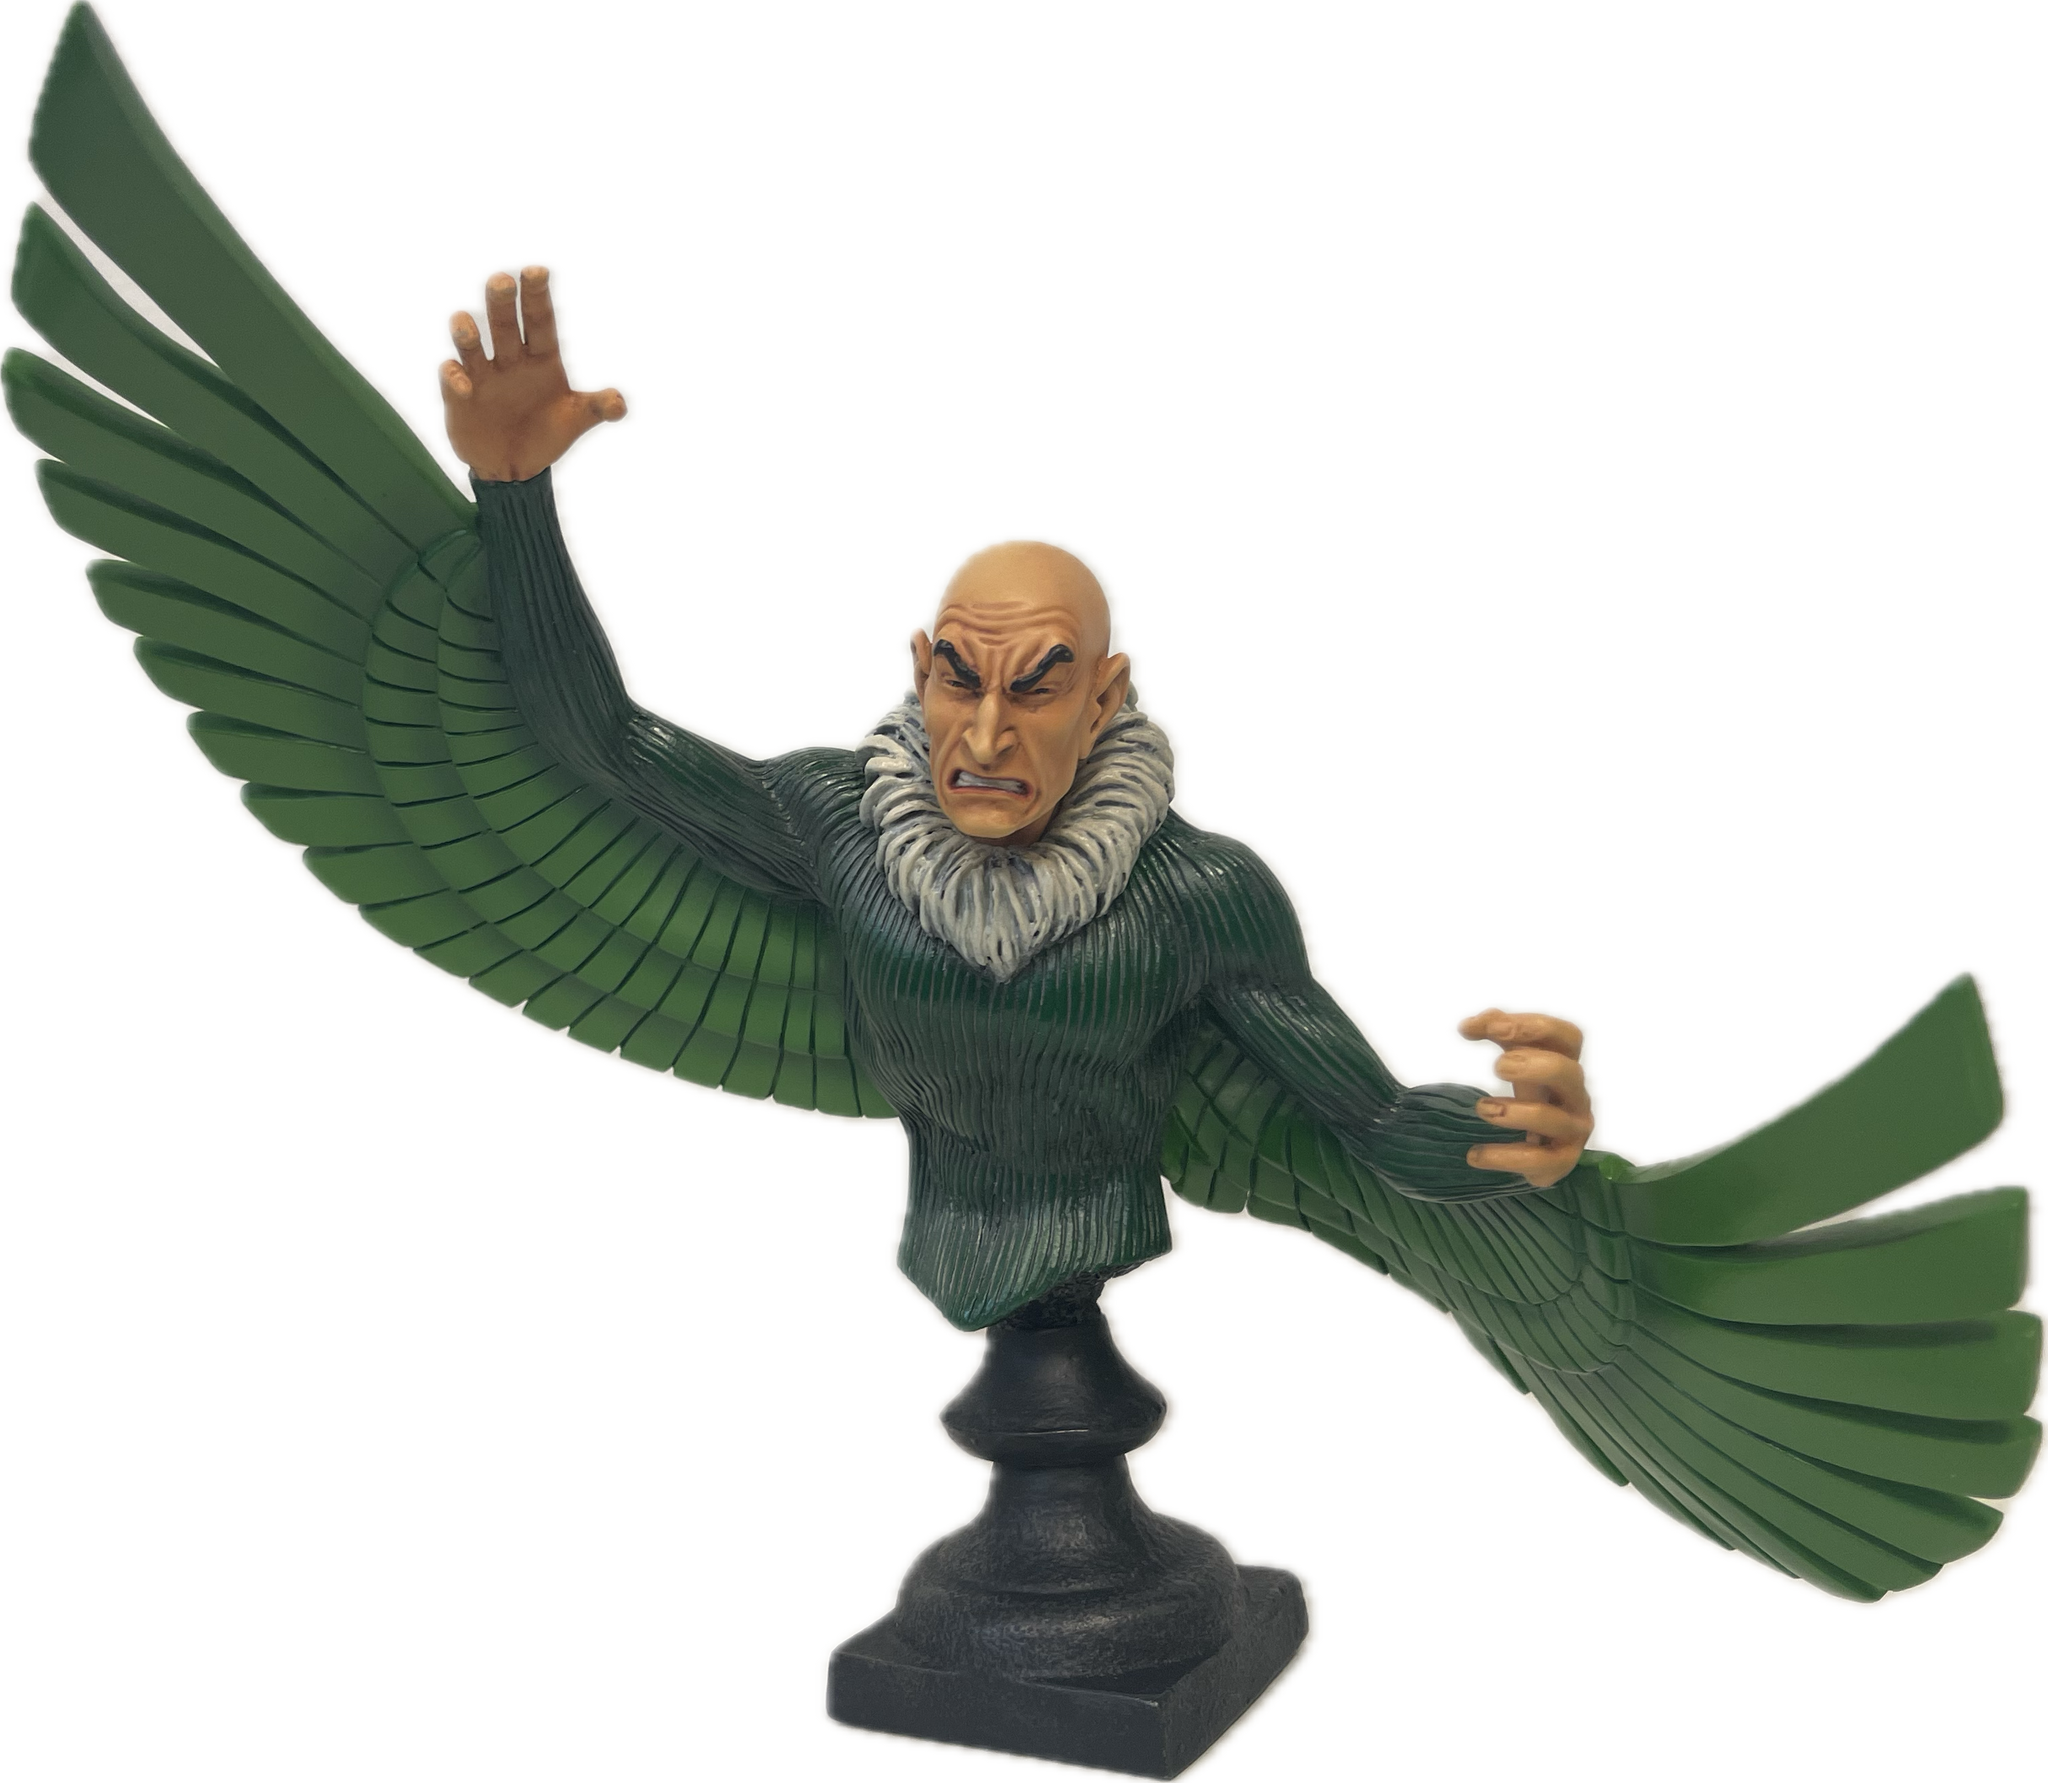 Bowen Designs The Vulture Marvel Mini-Bust Statue